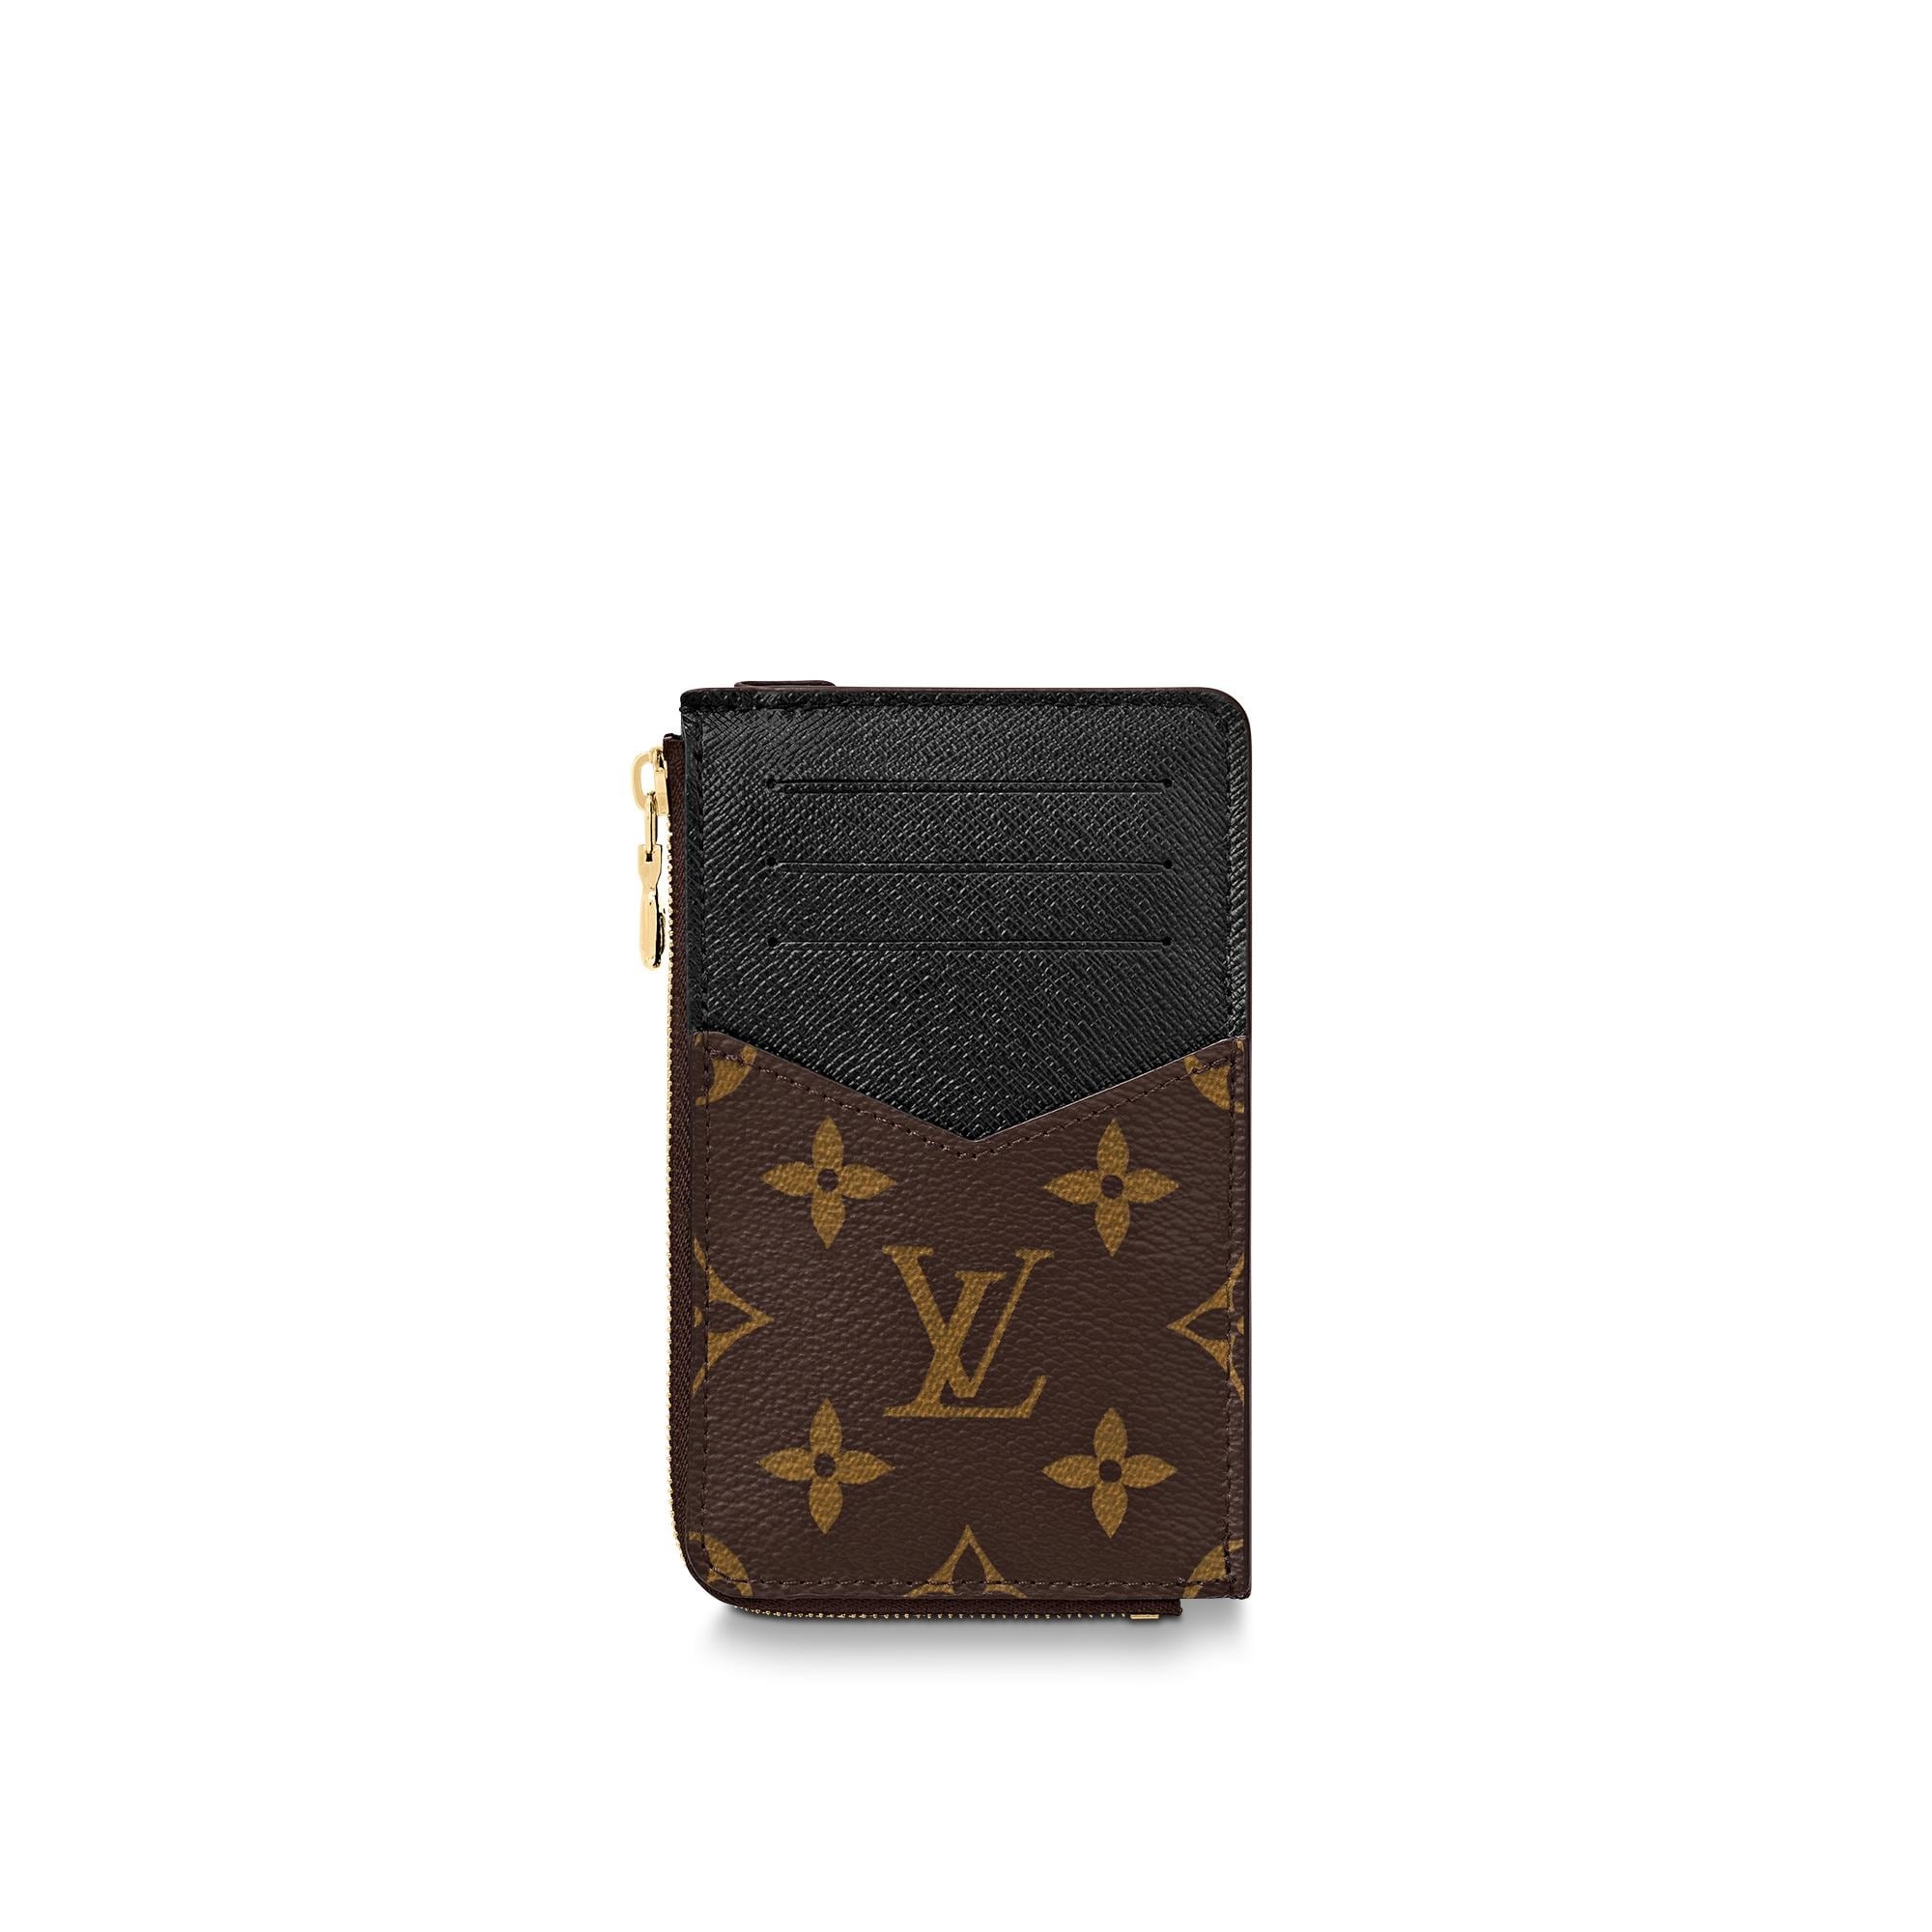 Celeste wallet or Victorine wallet